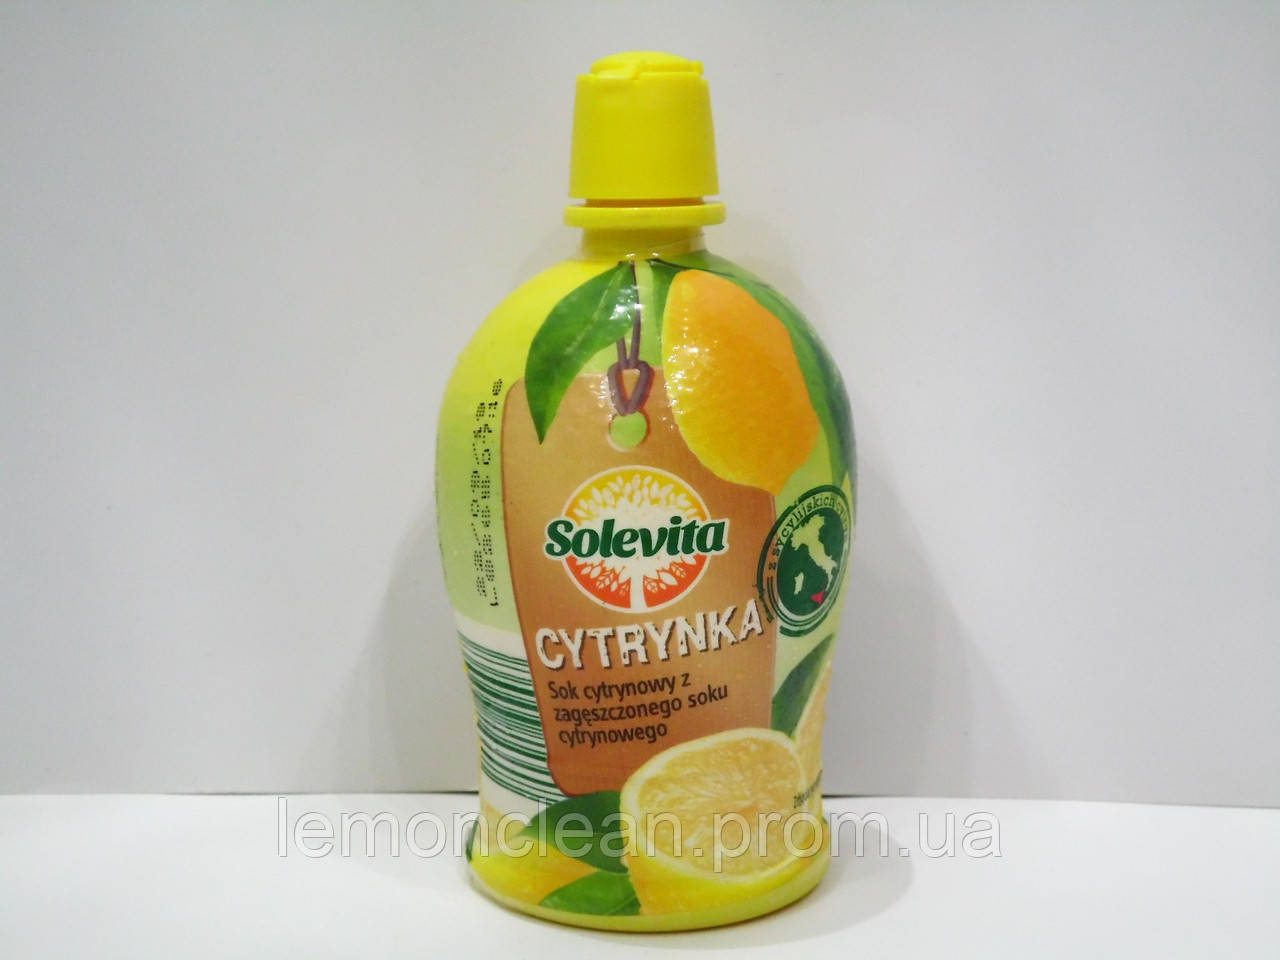 Концентрированный лимонный сок Solevita Cytrynka 200млНет в наличии